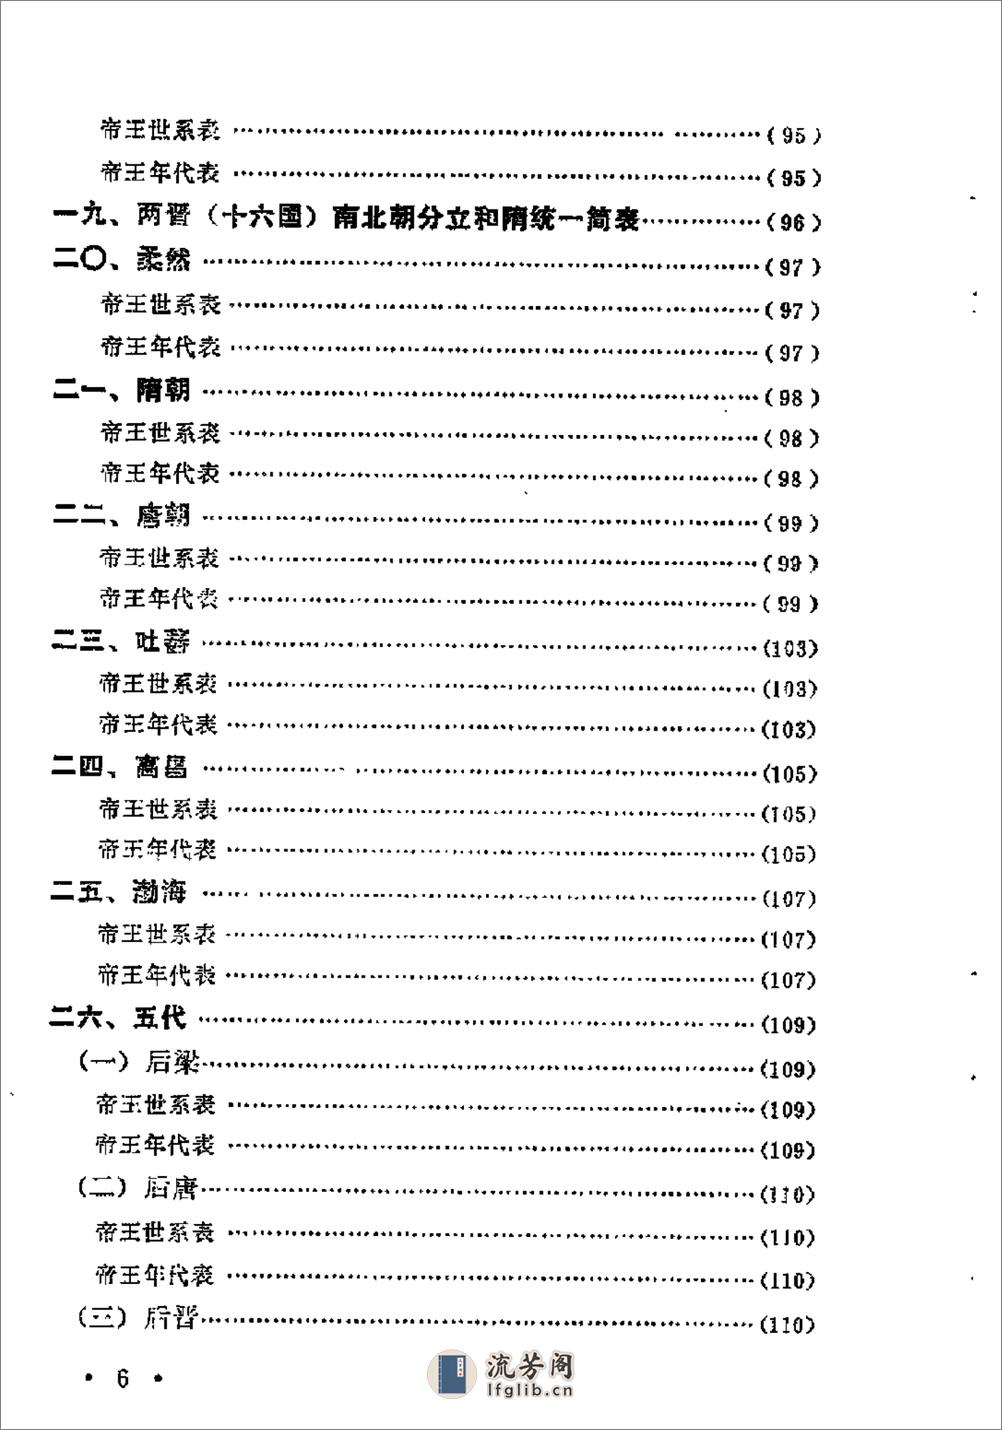 中国历史纪年简表·陈作良·中央党校1985 - 第9页预览图